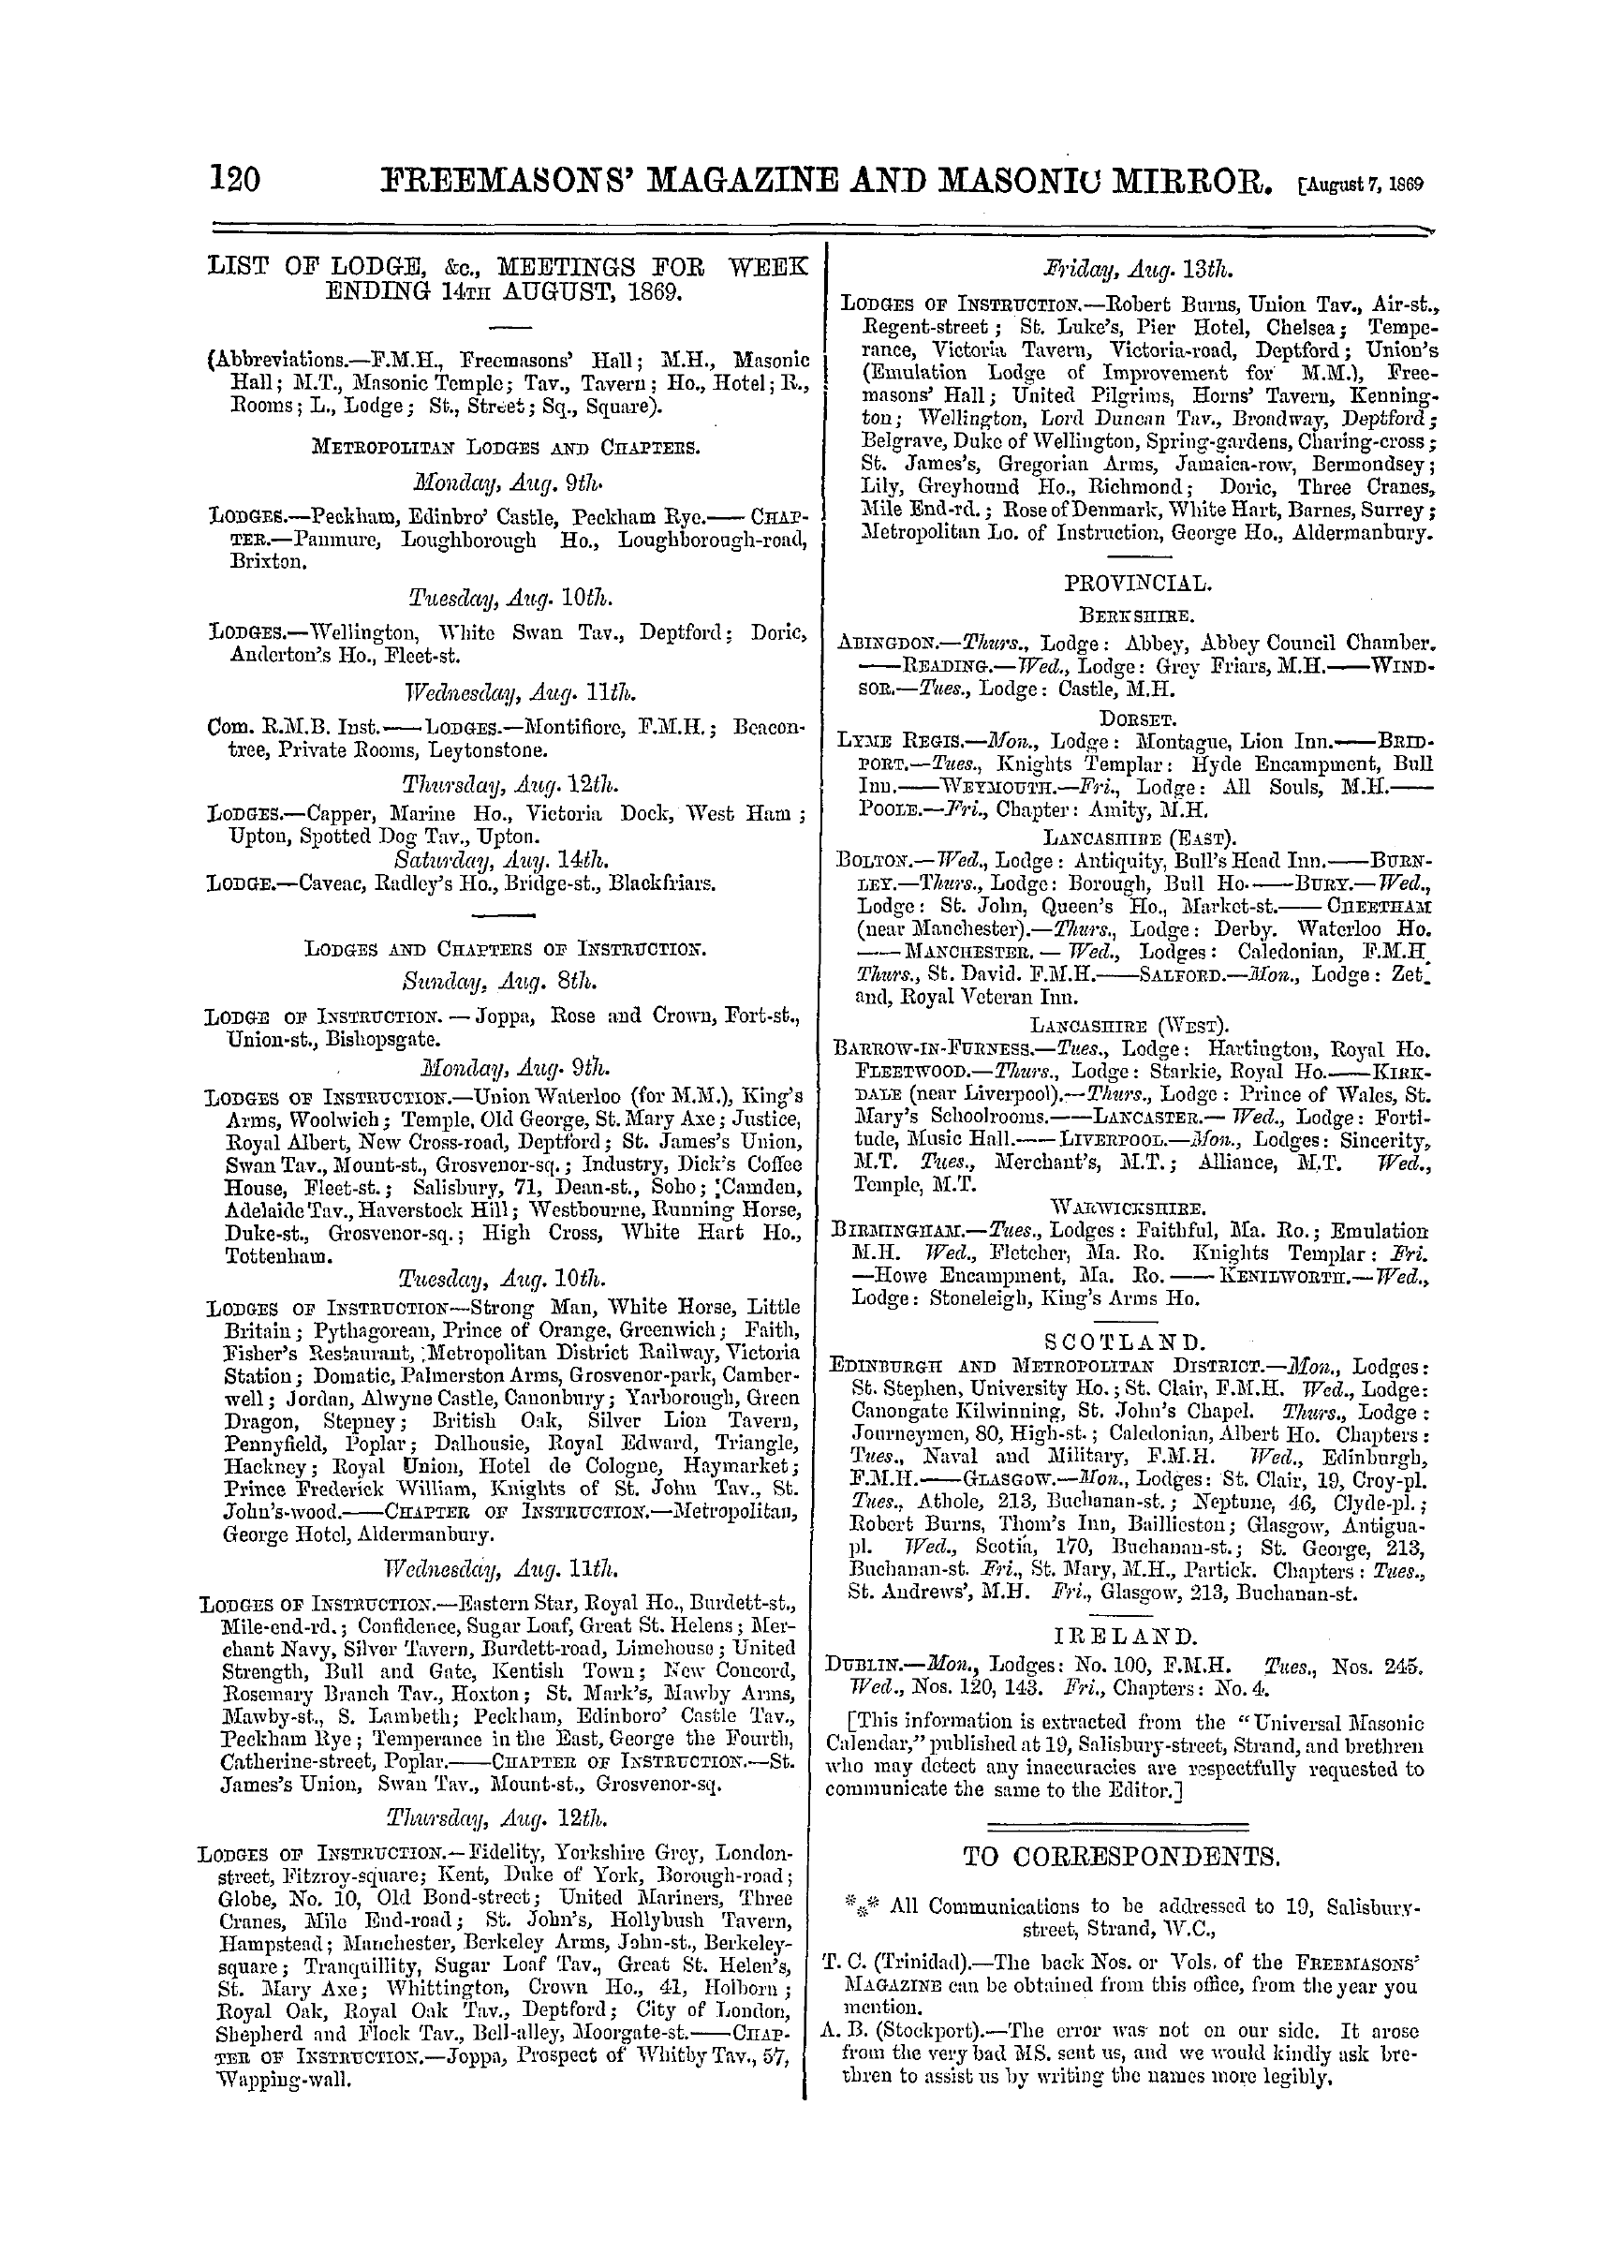 The Freemasons' Monthly Magazine: 1869-08-07 - To Correspondents.